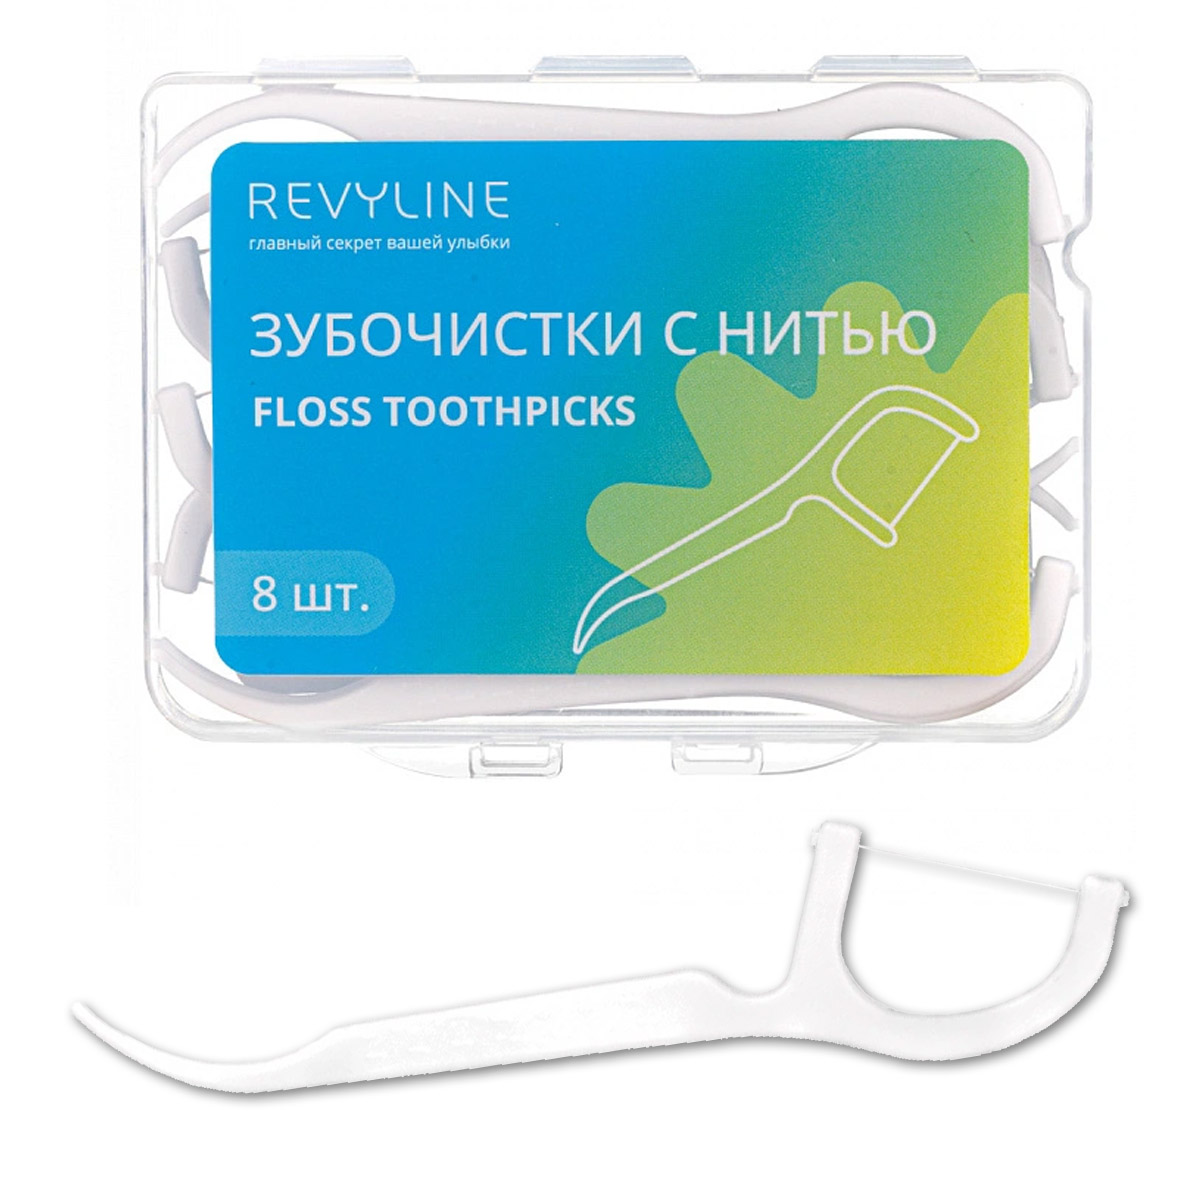 Зубная нить Revyline Revyline floss toothpicks, 8 шт. зубная нить revyline 840d expanding floss 1 шт